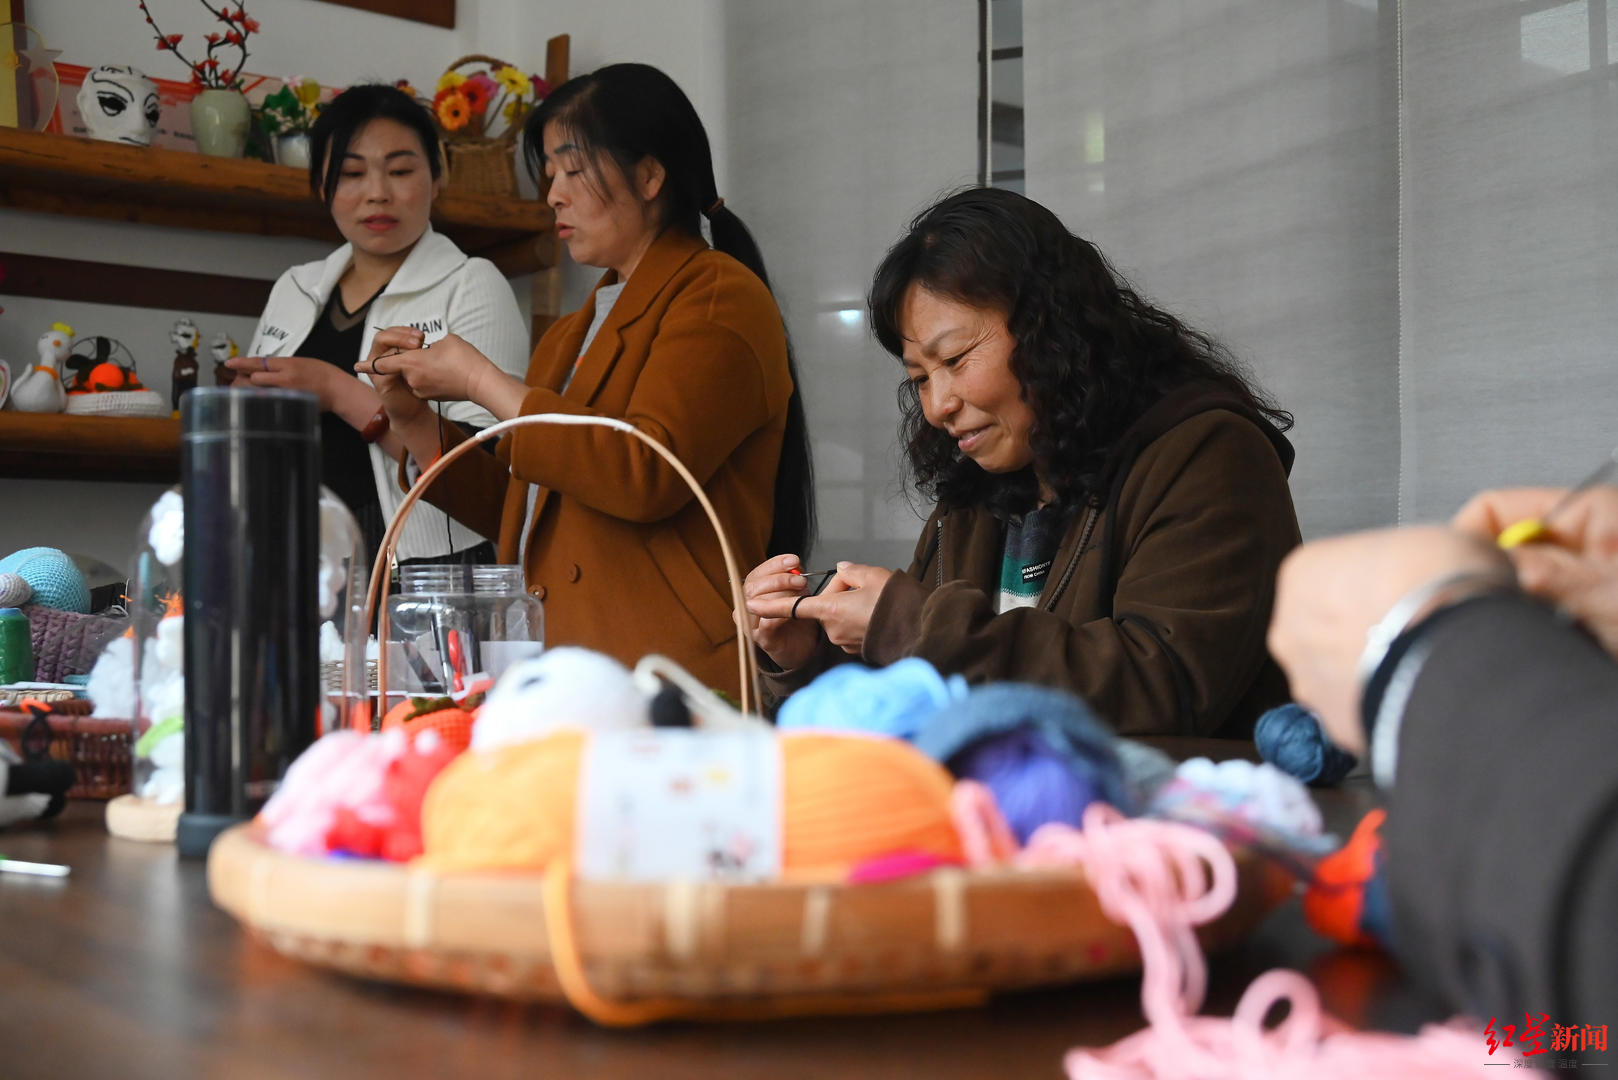 ▲村民正在学习手工编织工艺品